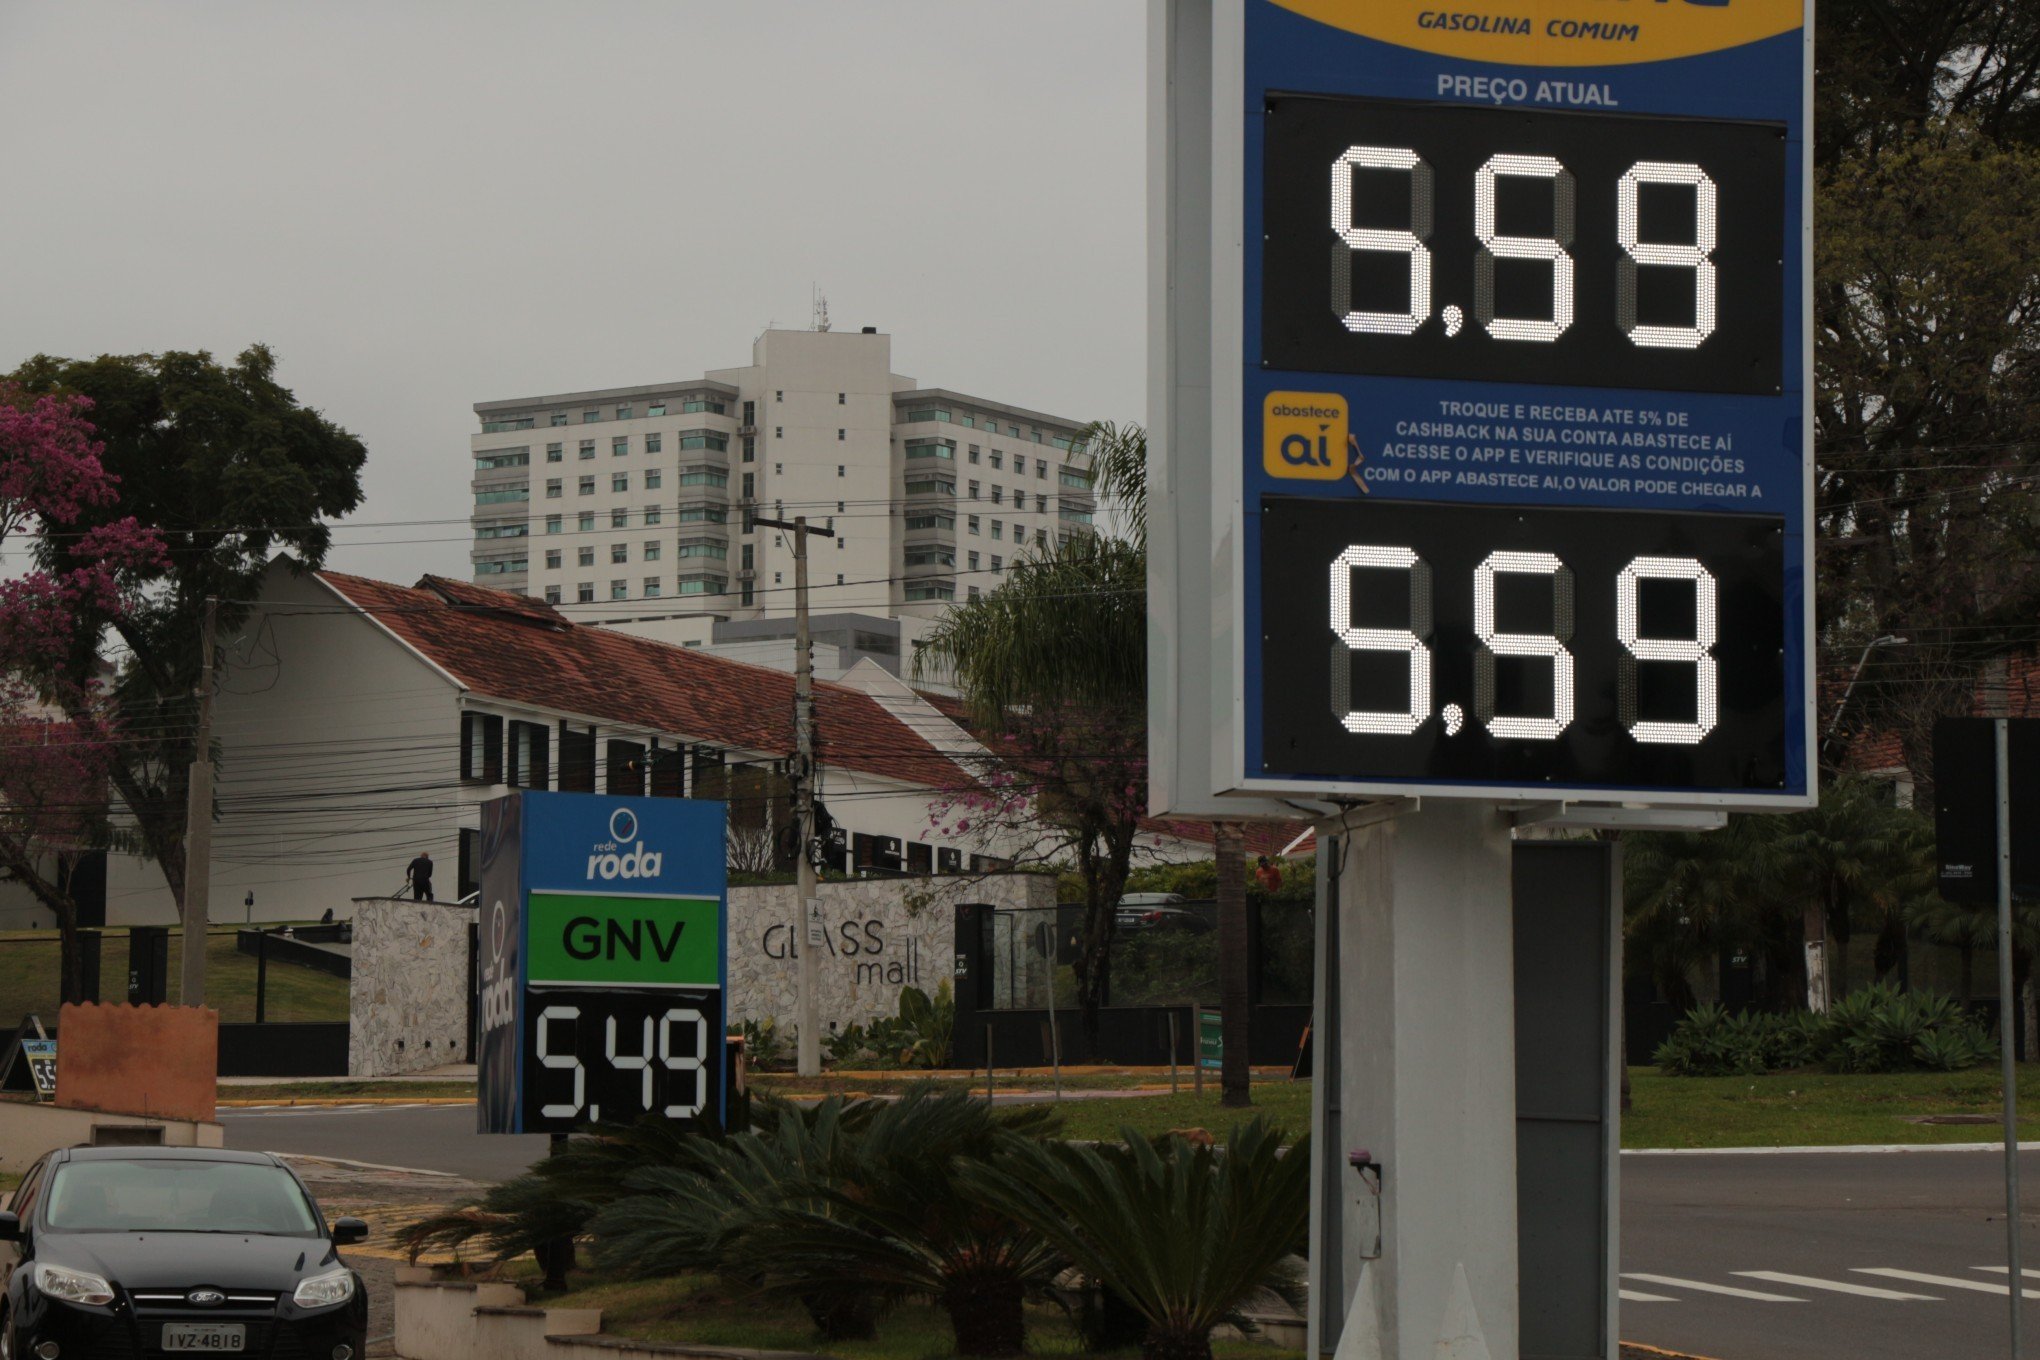 Gasolina comum volta a ficar mais cara em Novo Hamburgo; veja quanto está o litro